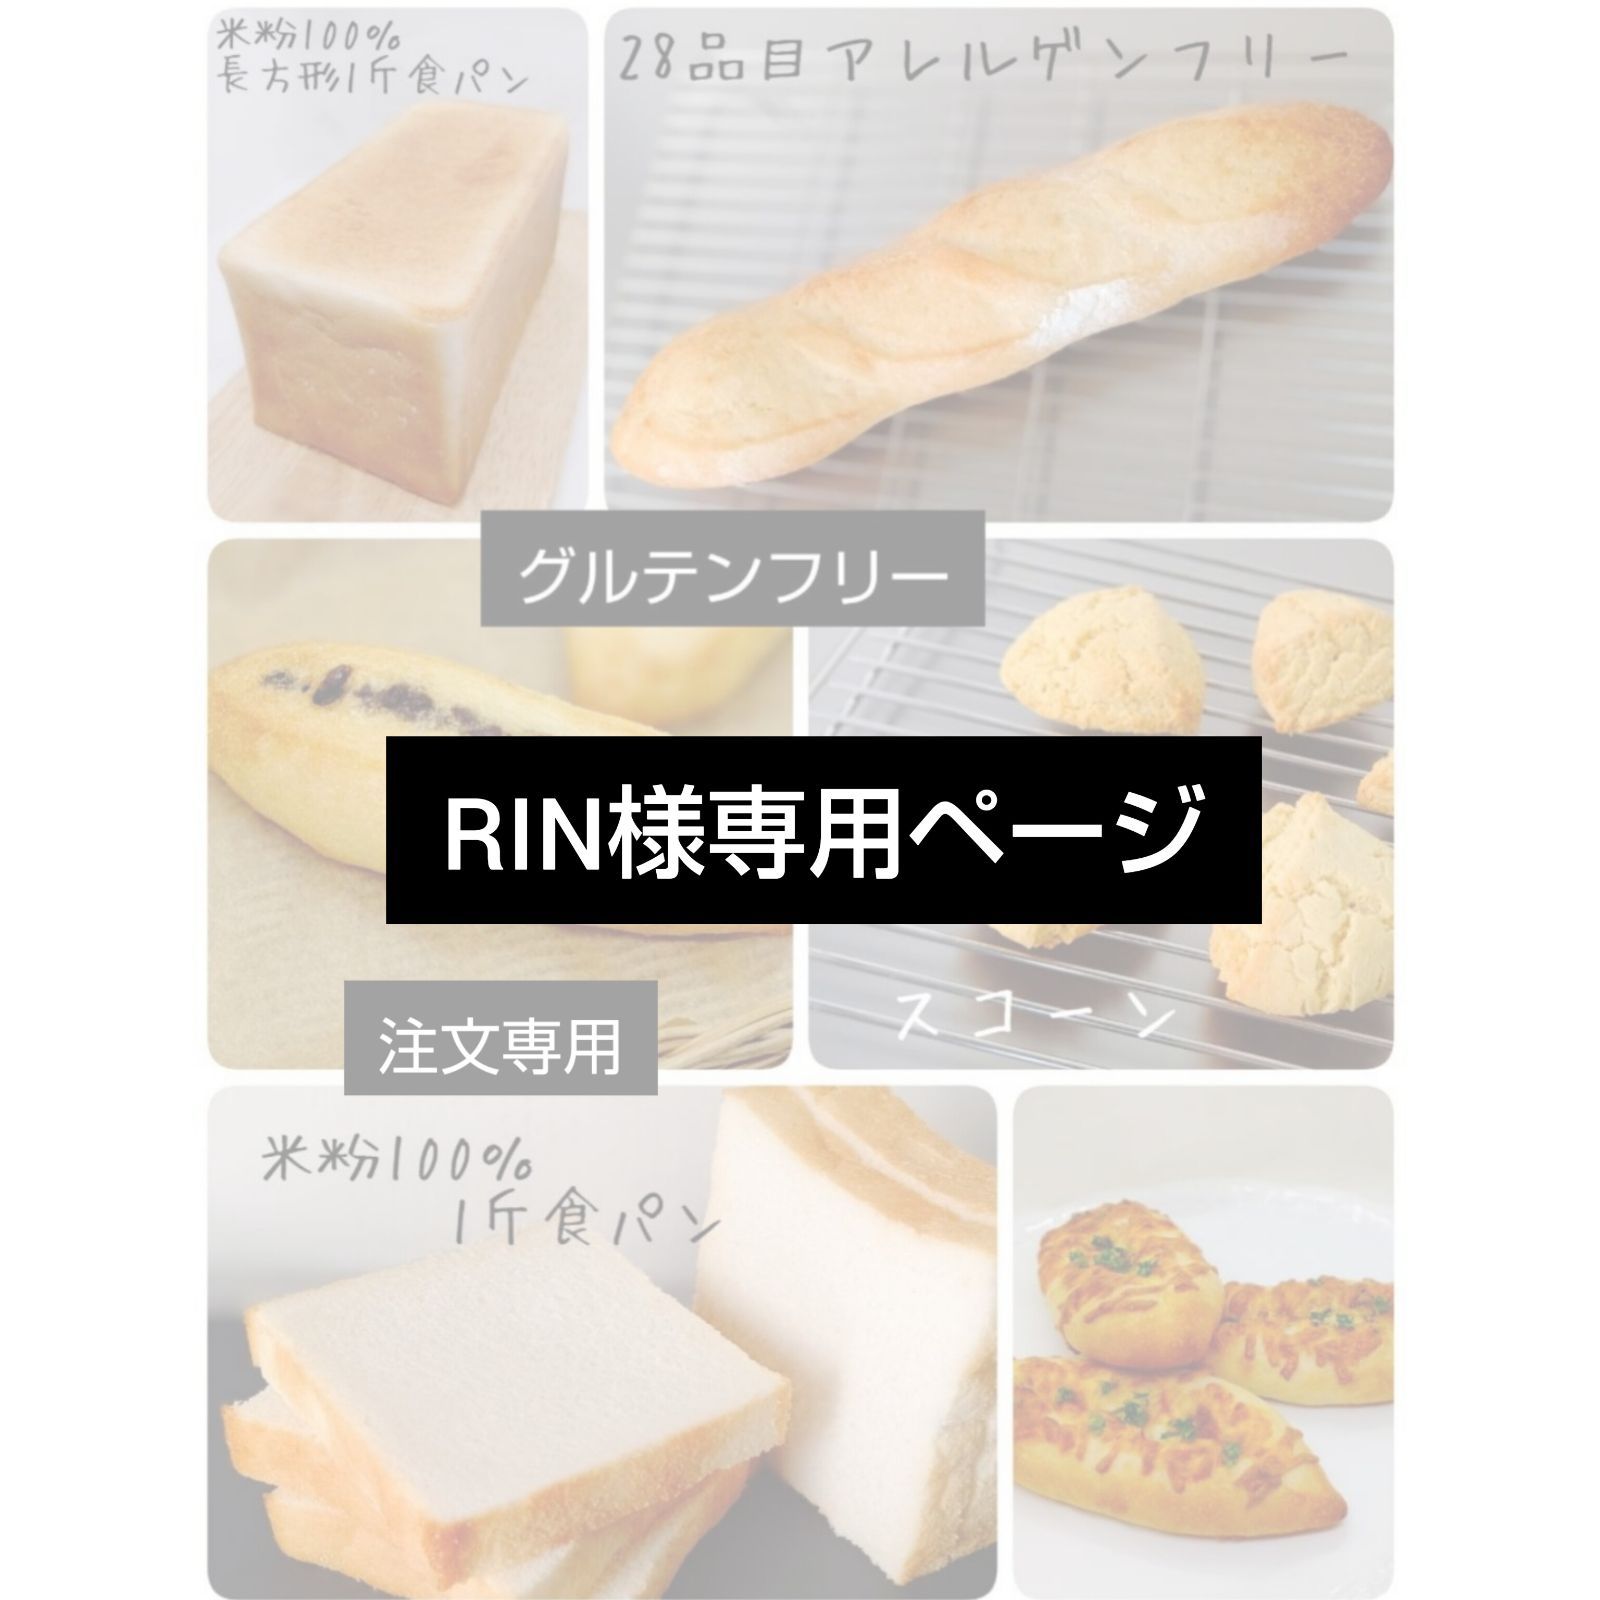 RIN様専用出品ページ 米粉パン - メルカリ